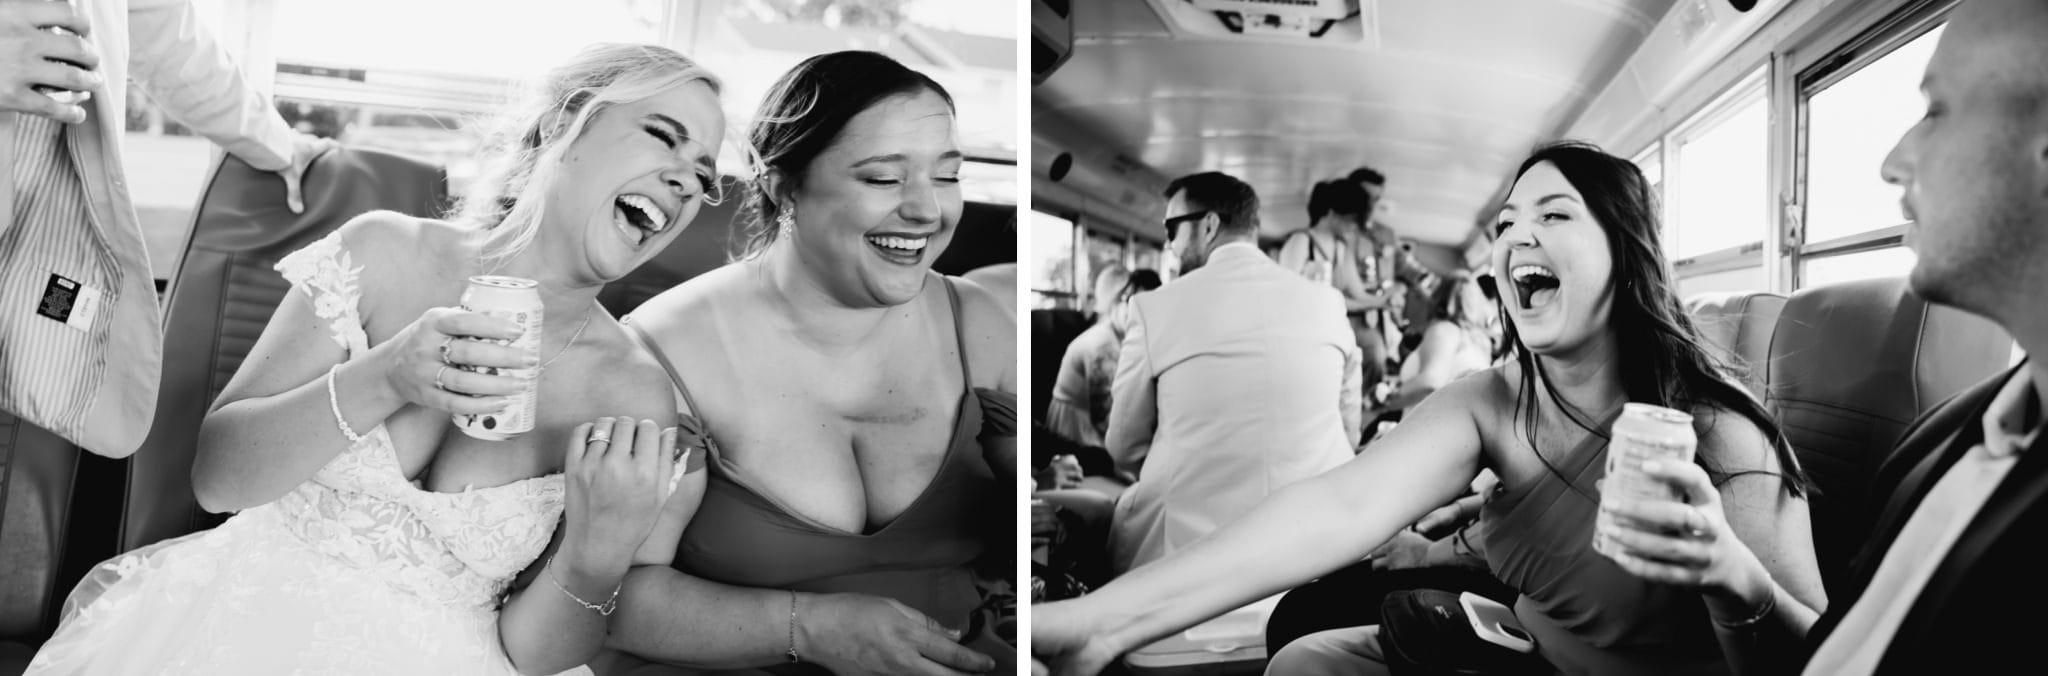 fun wedding party bus photos